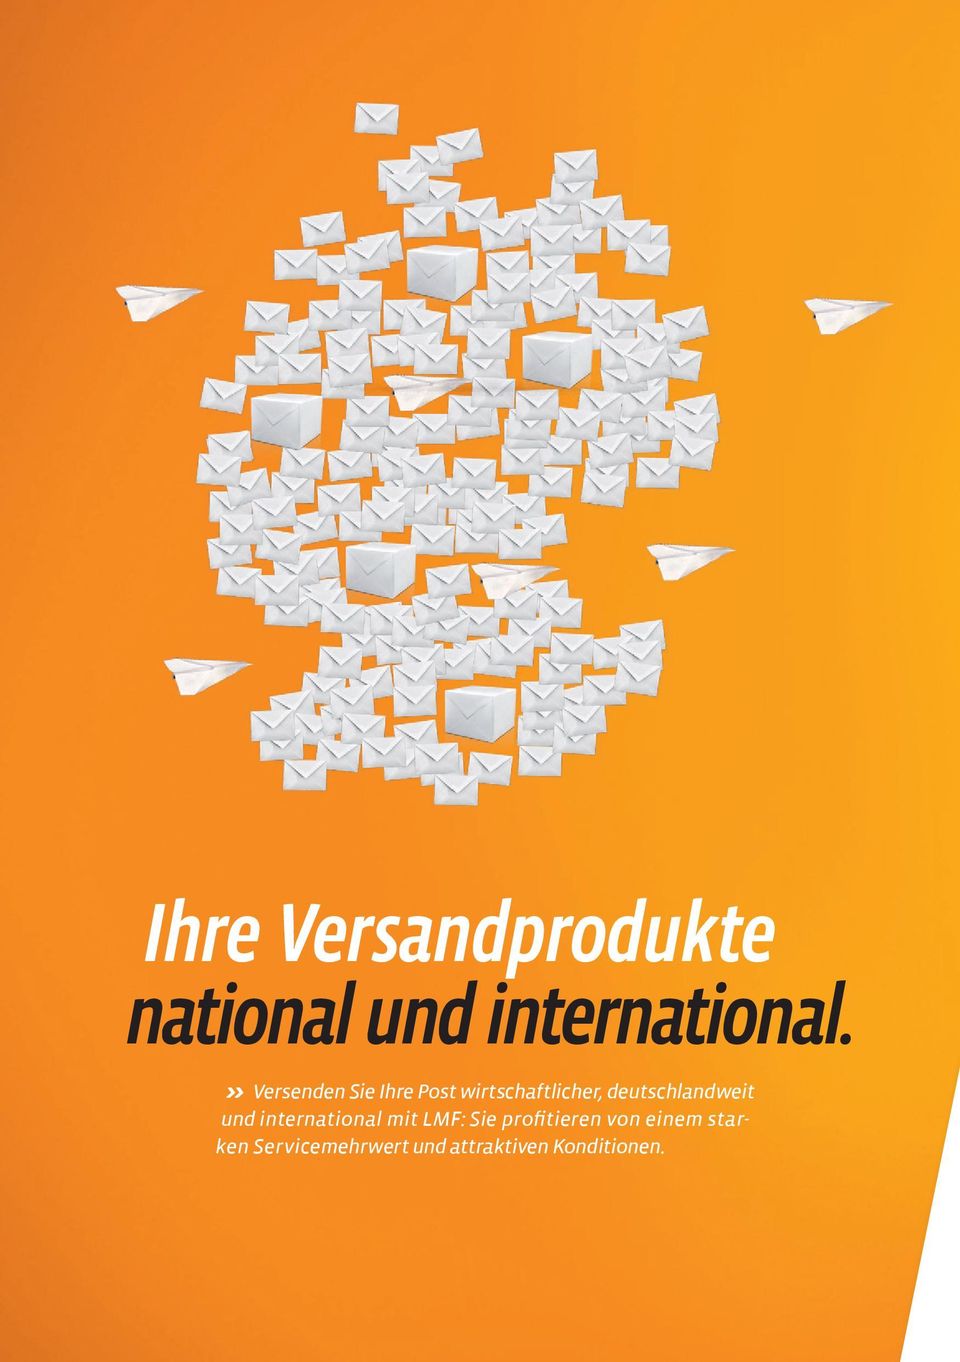 deutschlandweit und international mit LMF: Sie